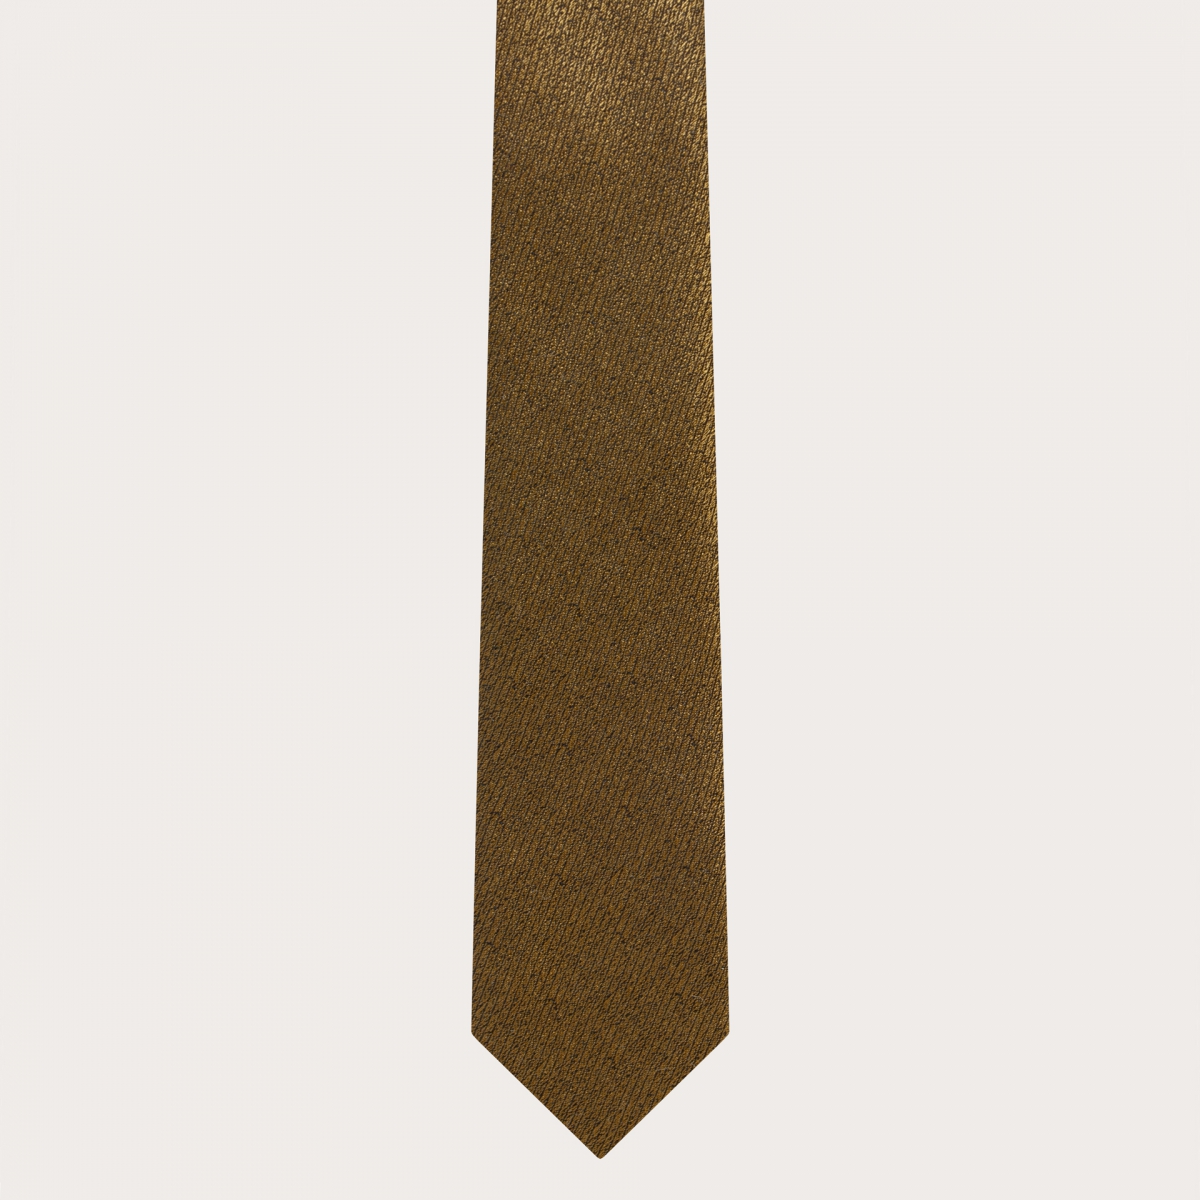 BRUCLE Set completo da cerimonia in seta dorata iridescente, bretelle, cravatta e fazzoletto da taschino